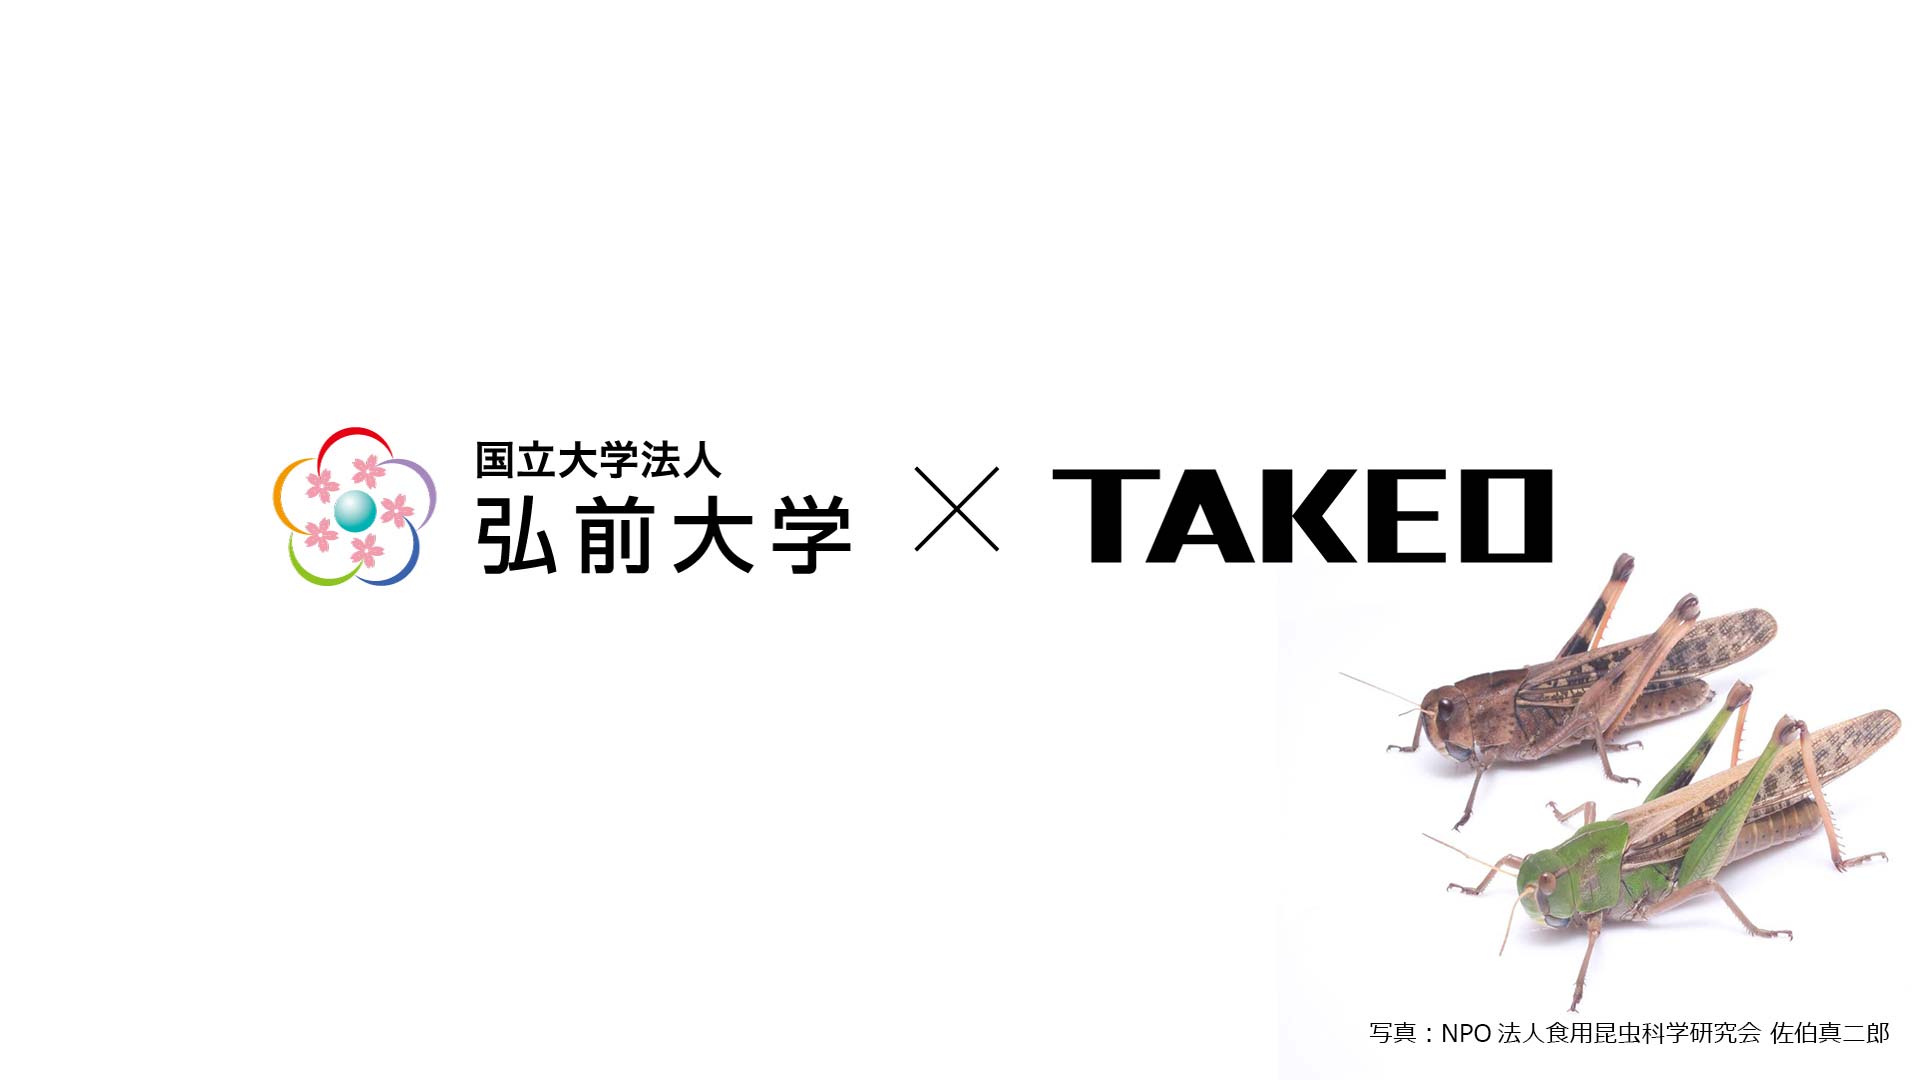 昆虫食 振り返り 2020 【TAKEOの取り組み】弘前大学とトノサマバッタの食用利用に関する共同研究を開始